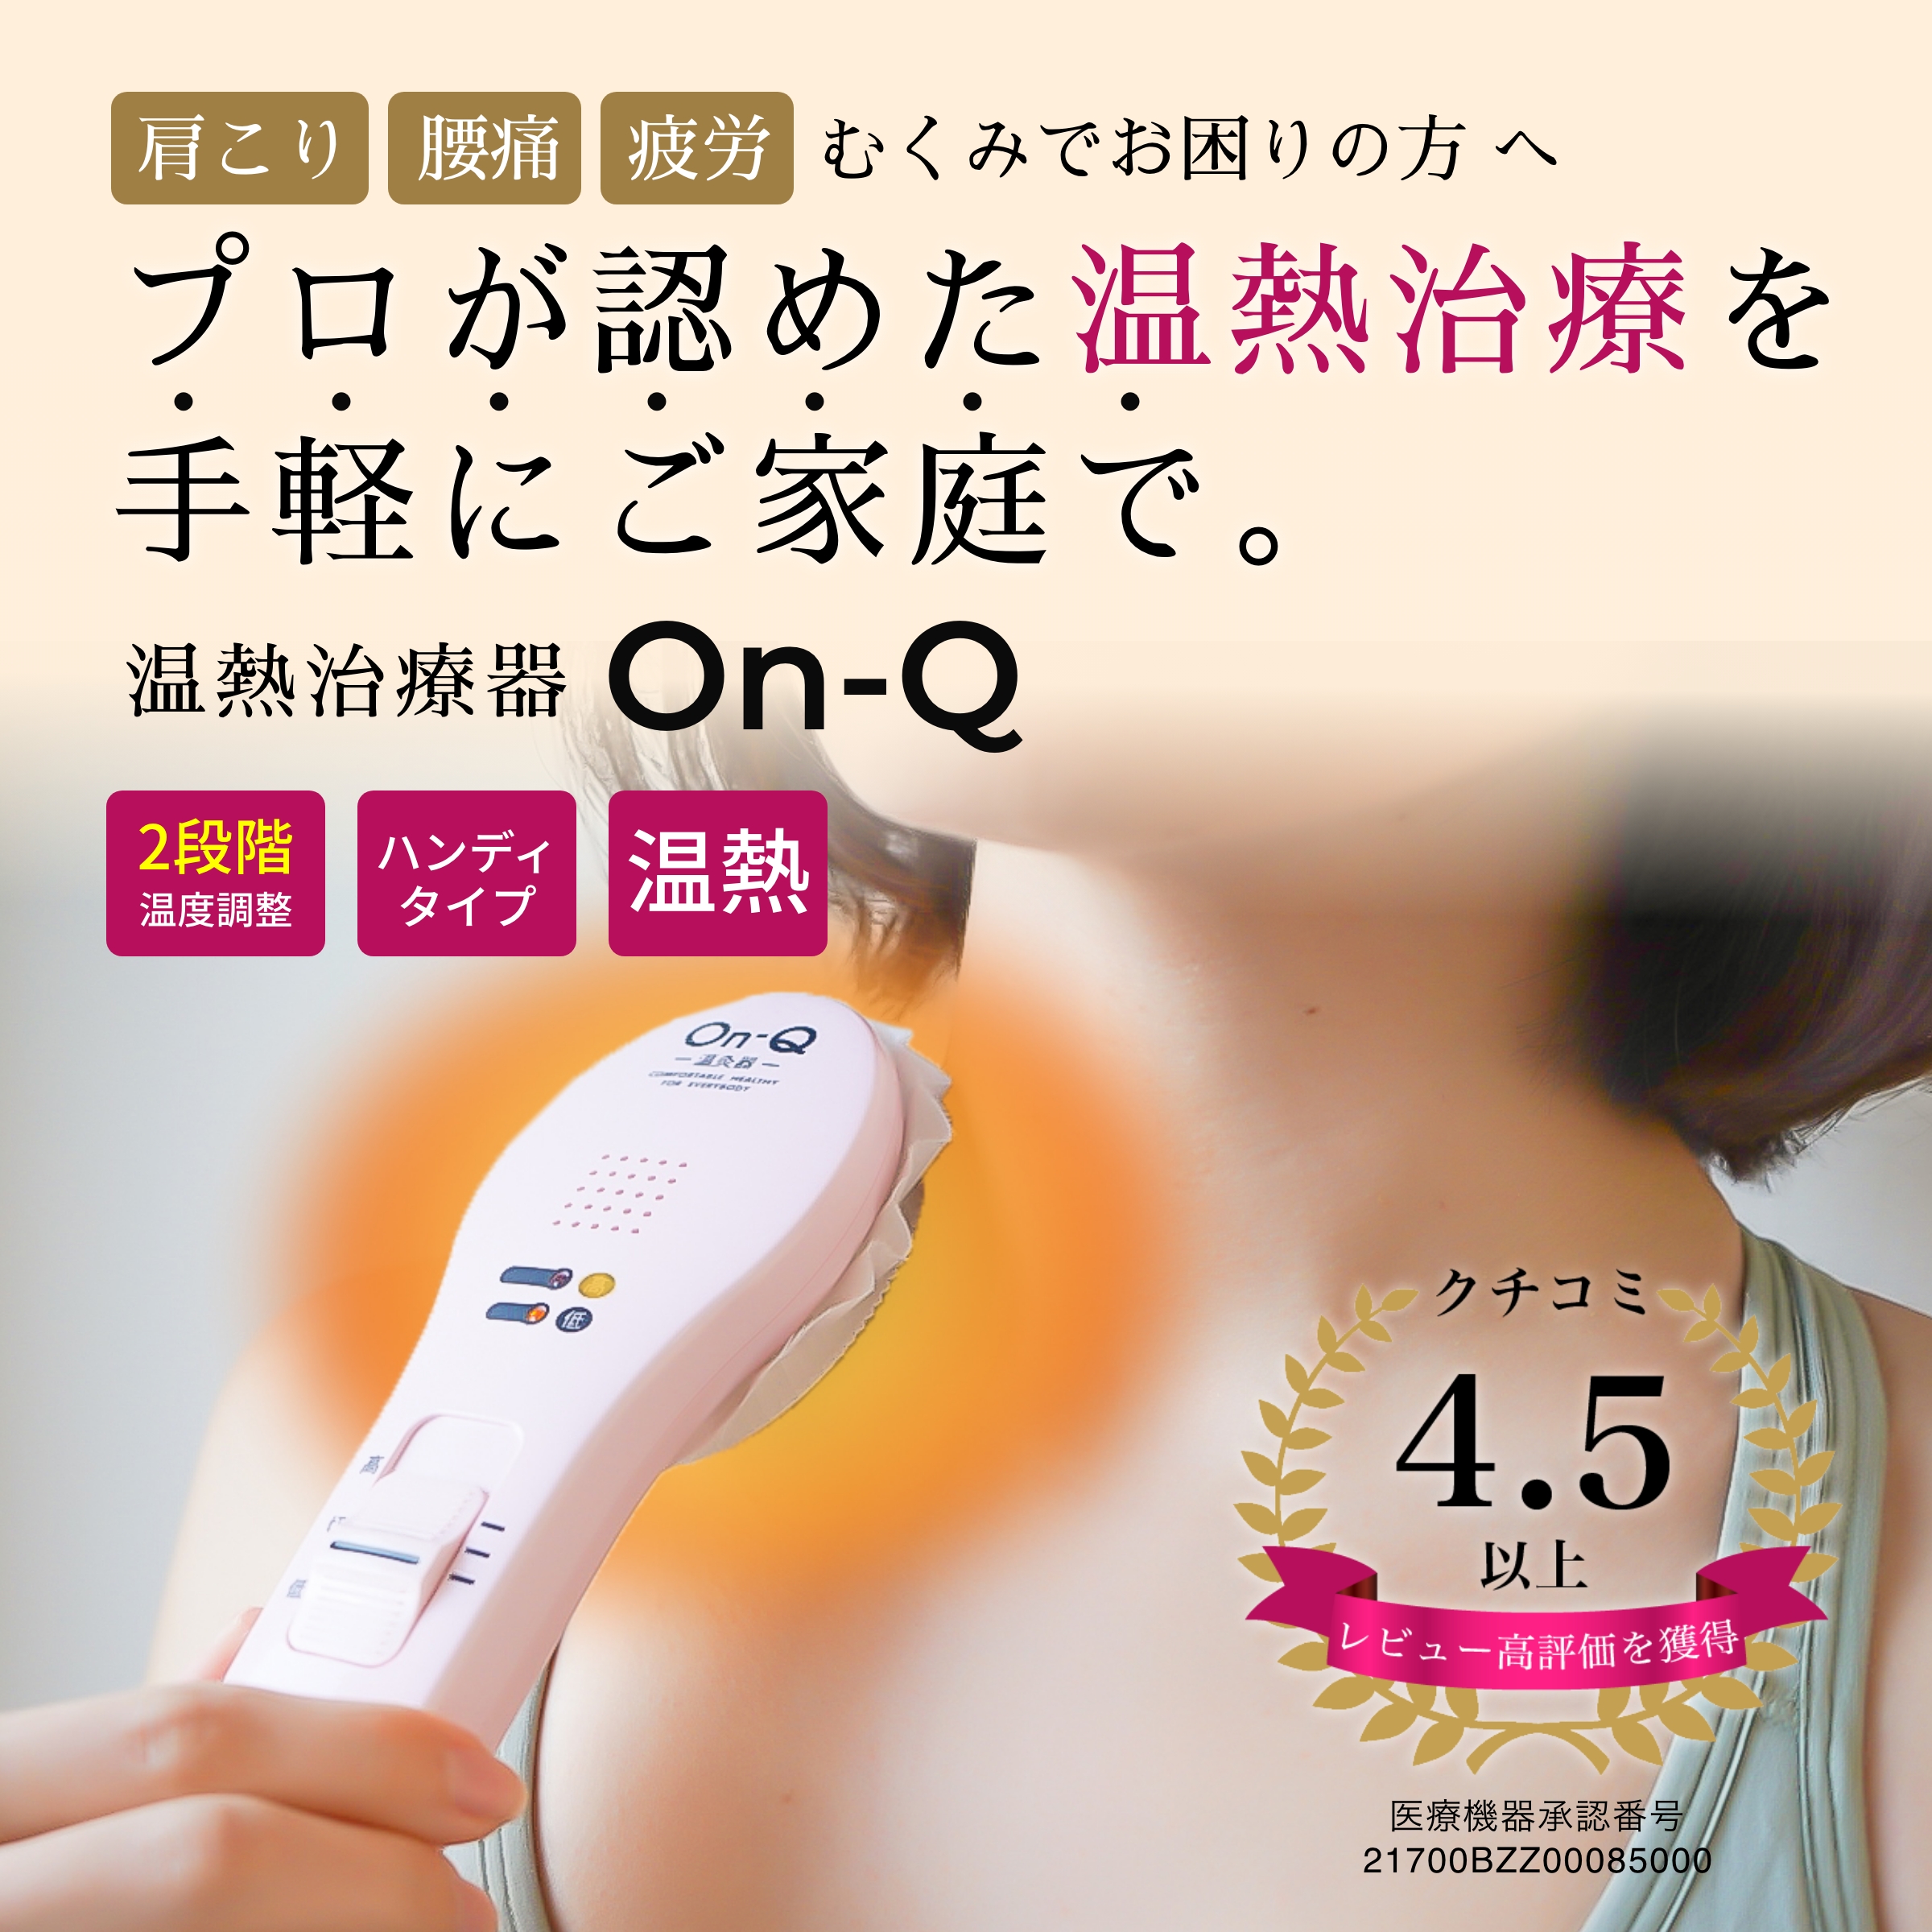 温熱治療器 On-Q オンキュー グレー ピンク 温灸 丼親堂本舗 医療機器承認番号取得済み